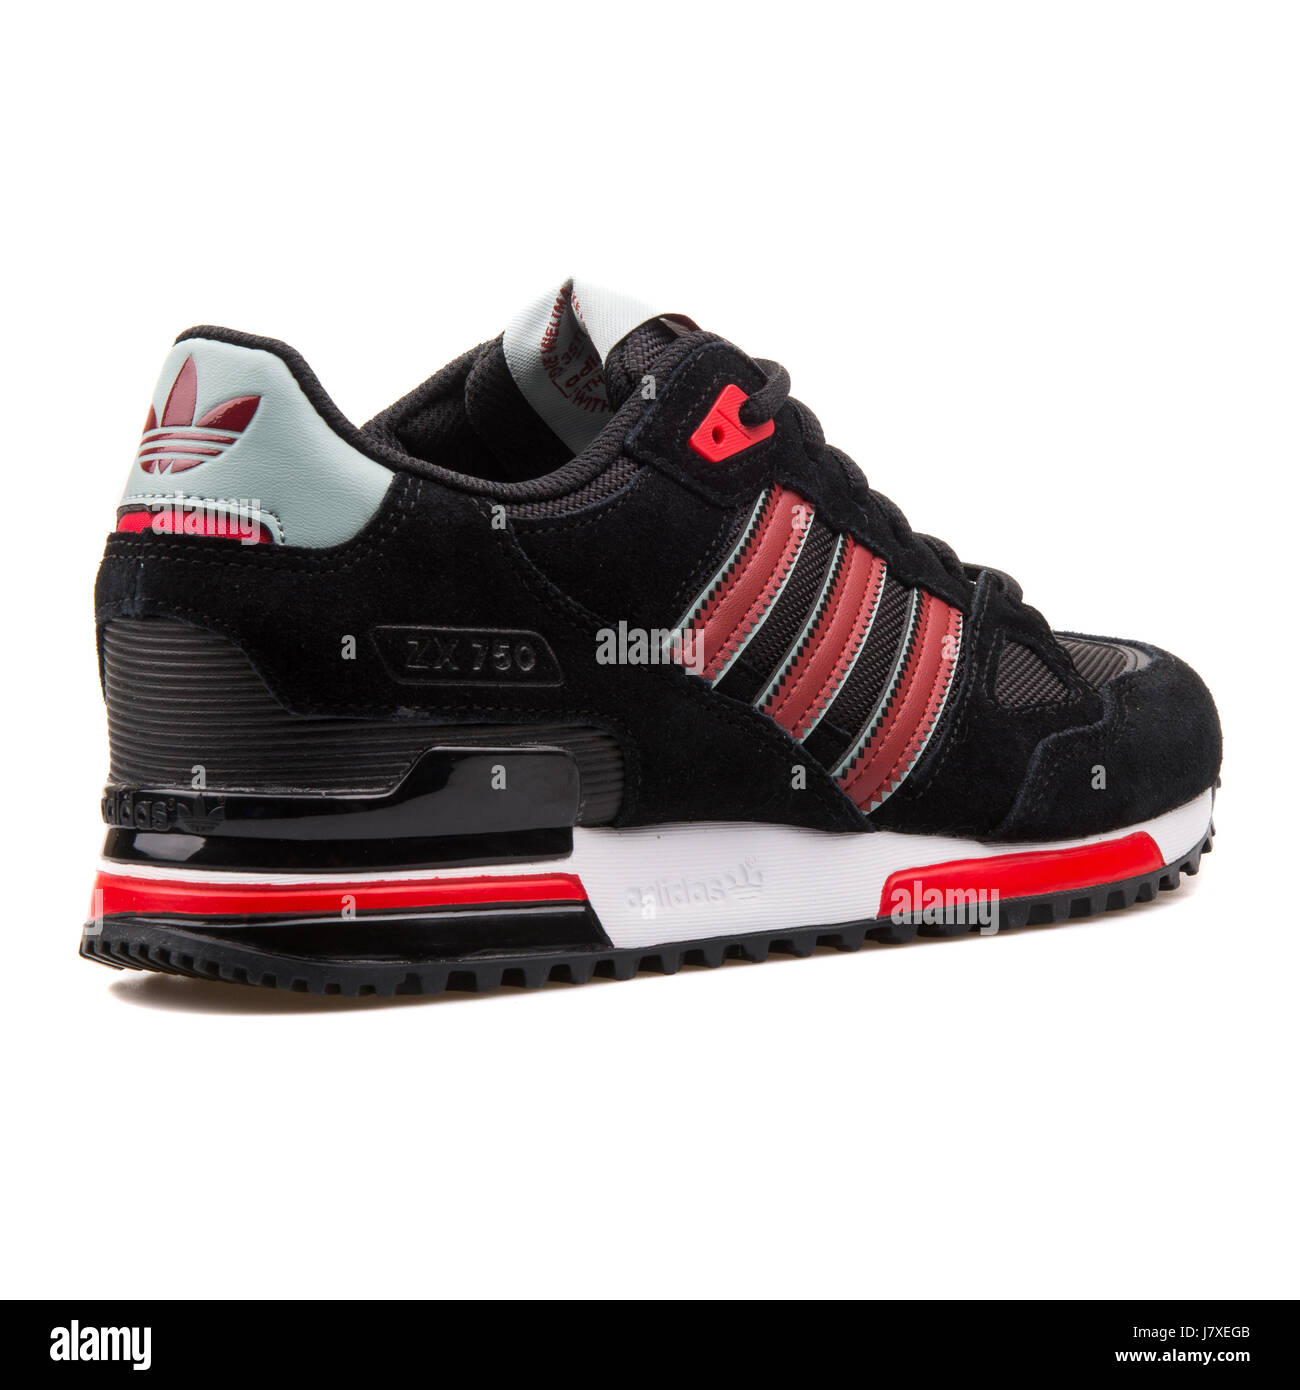 Adidas ZX 750 uomini nero con rosso Sneakers - B24856 Foto stock - Alamy